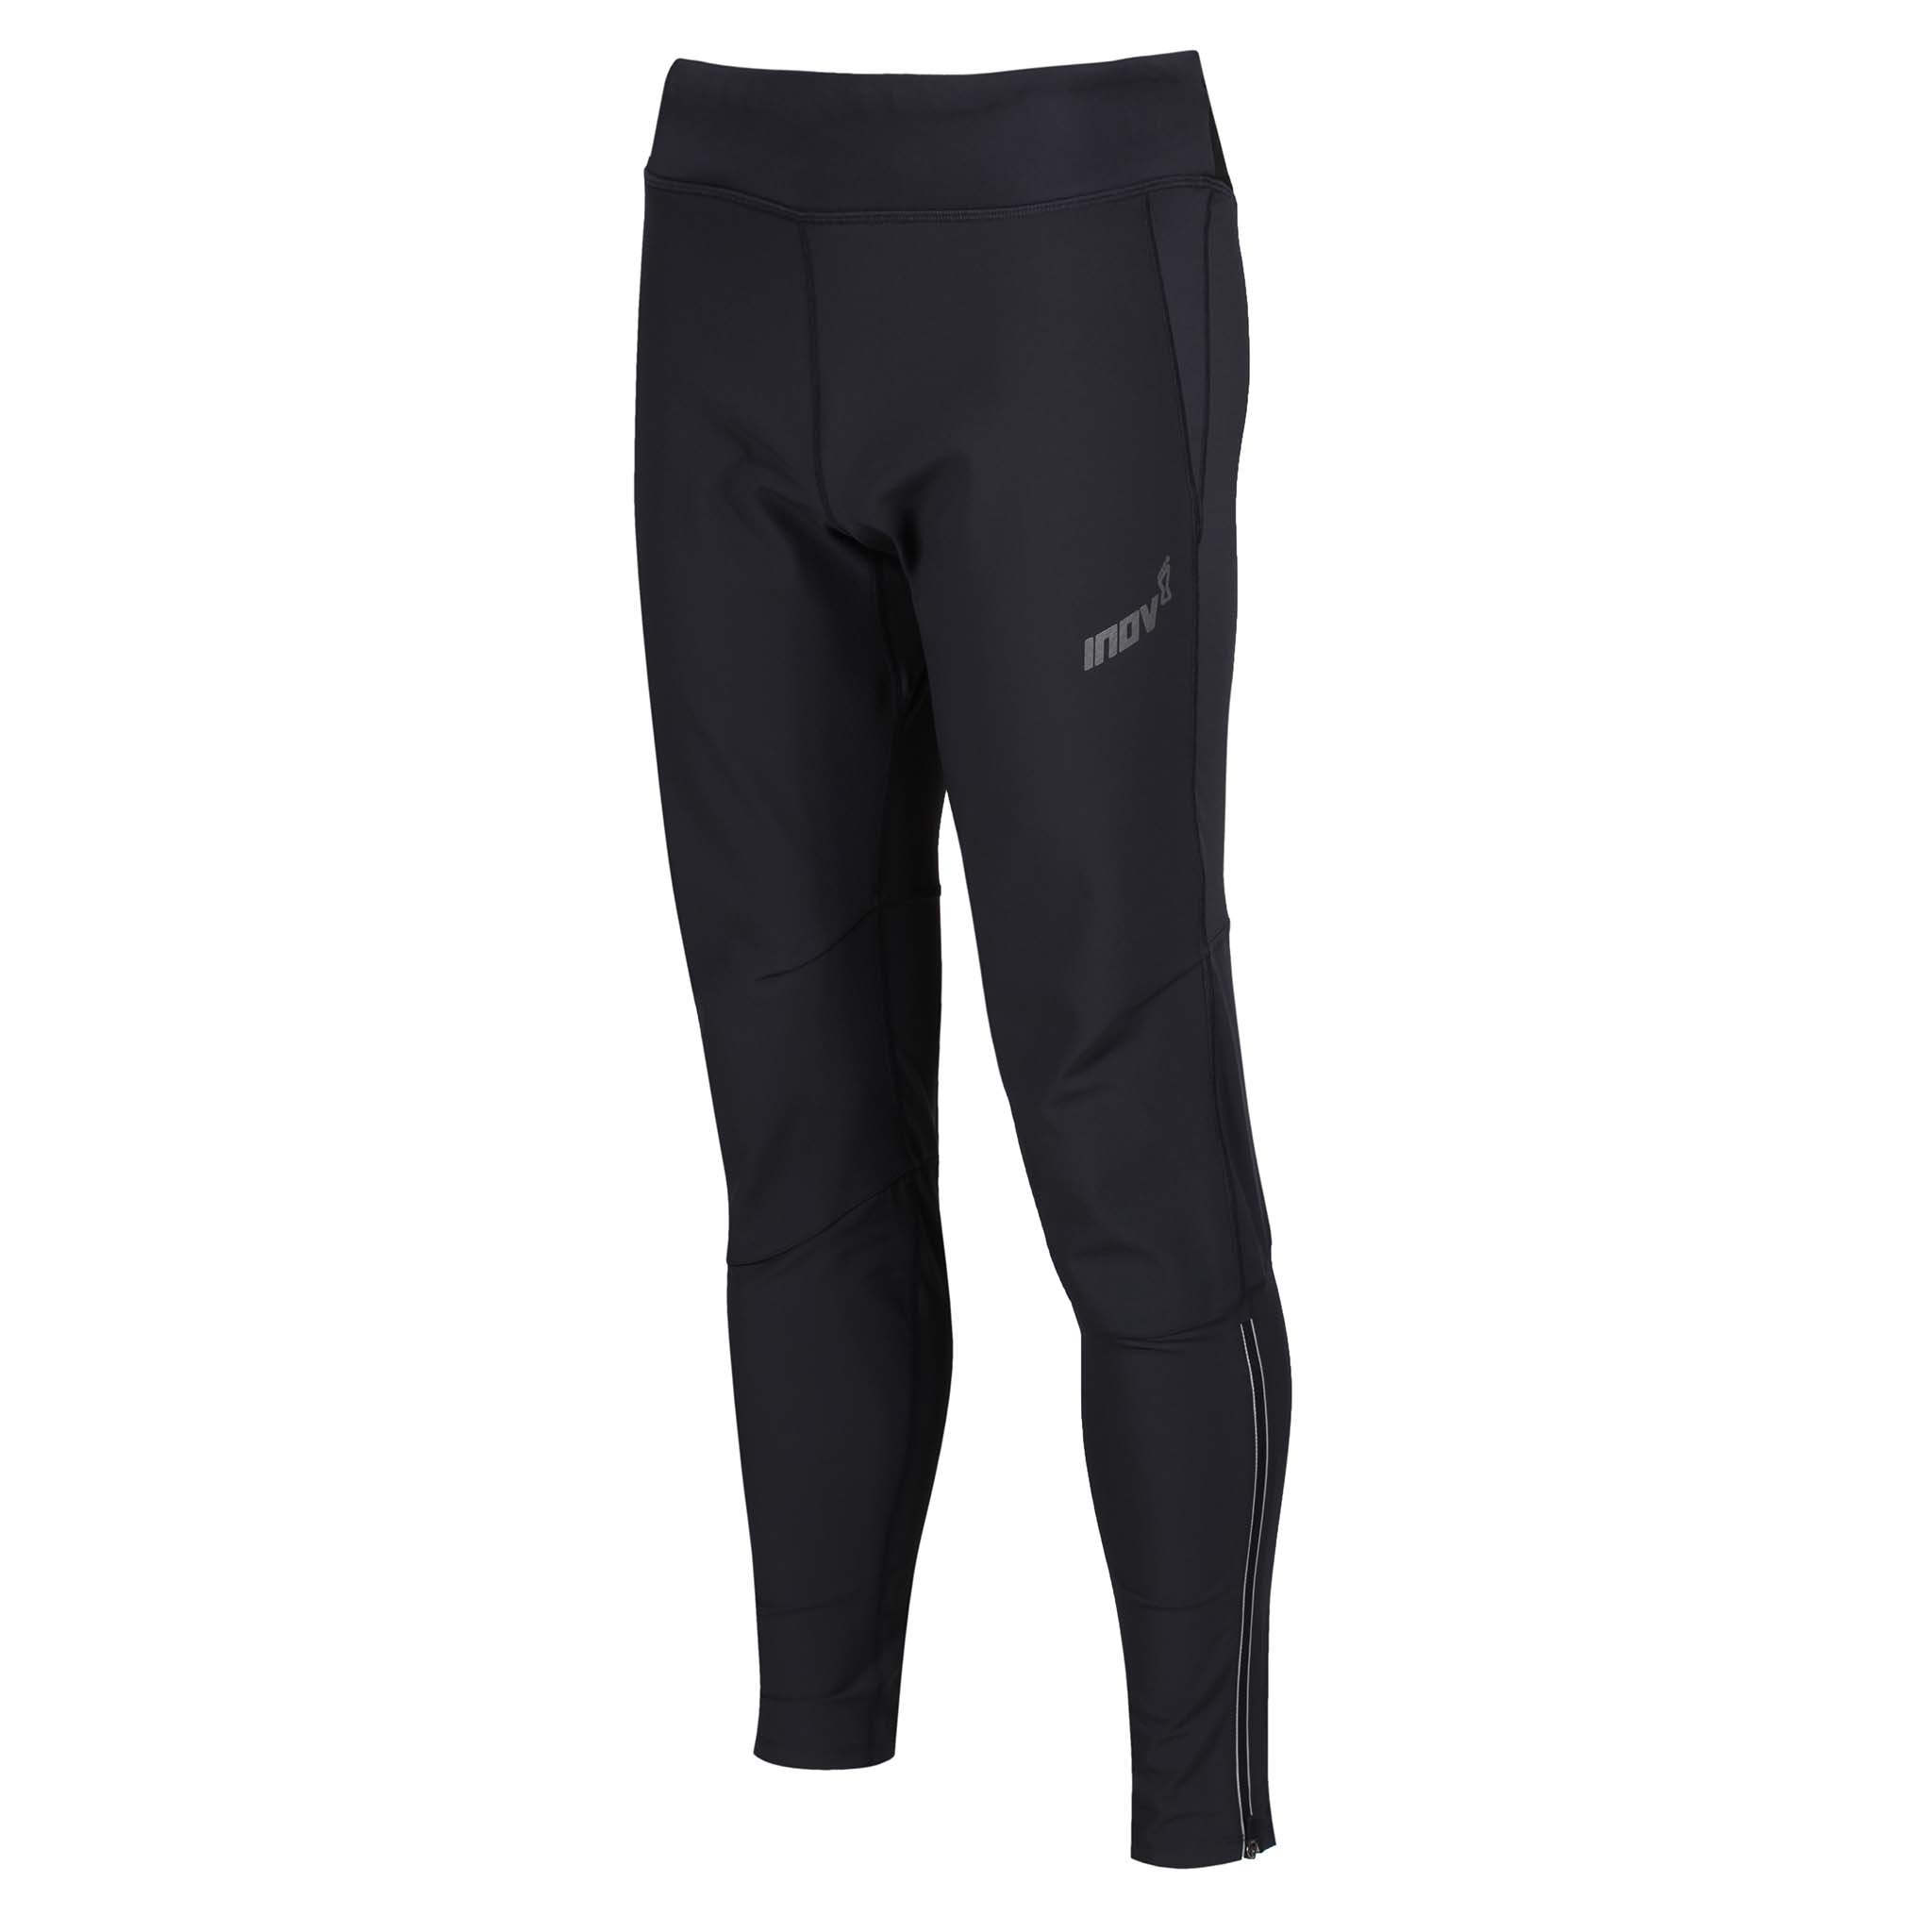 Inov-8 Winter Pants 2.0 running leggings for men - Soccer Sport Fitness